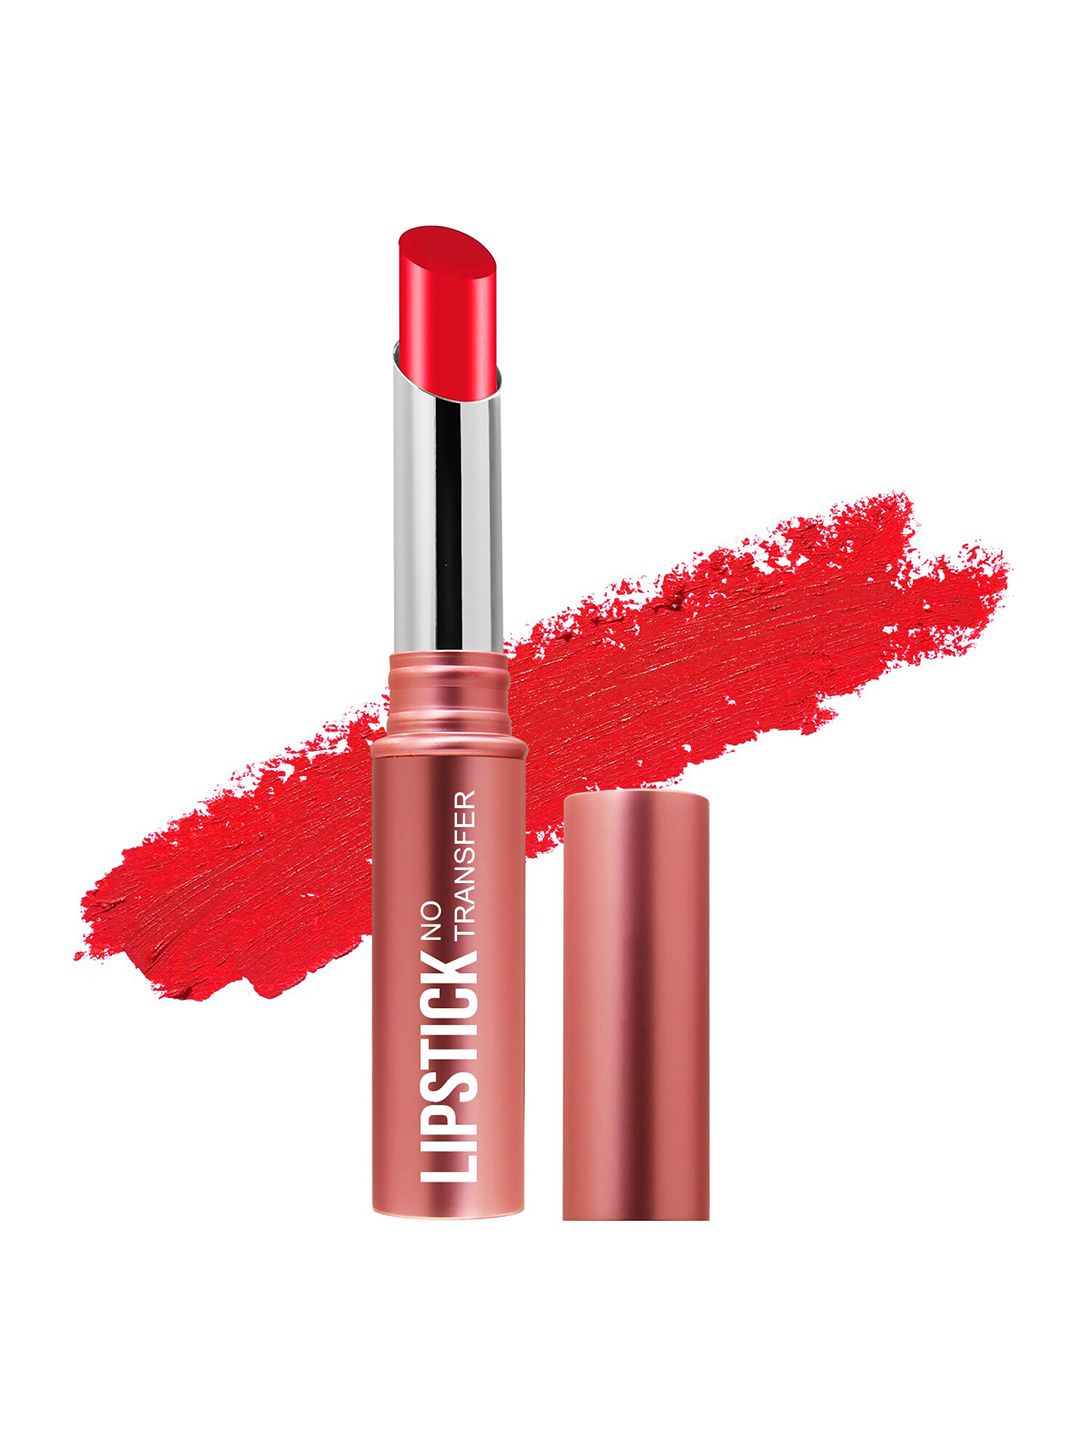 Magic Colour No Transfer Matte Lipstick - Coral Crave 14 Price in India